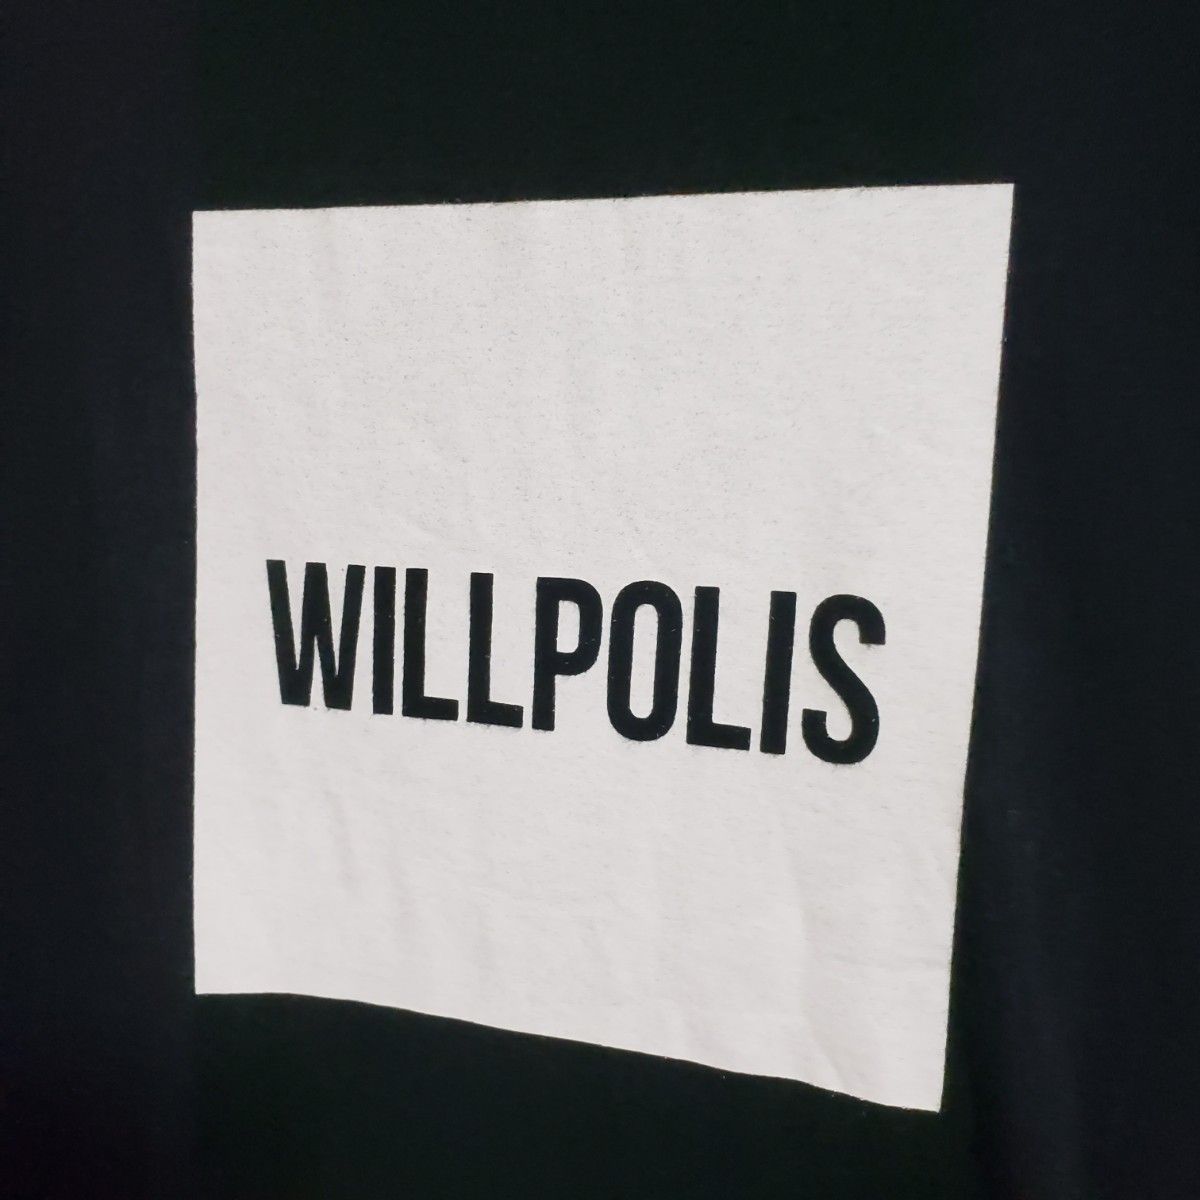 【2枚セット】BUMP OF CHICKEN WILLPOLIS Tシャツ ブラック ホワイト Sサイズ